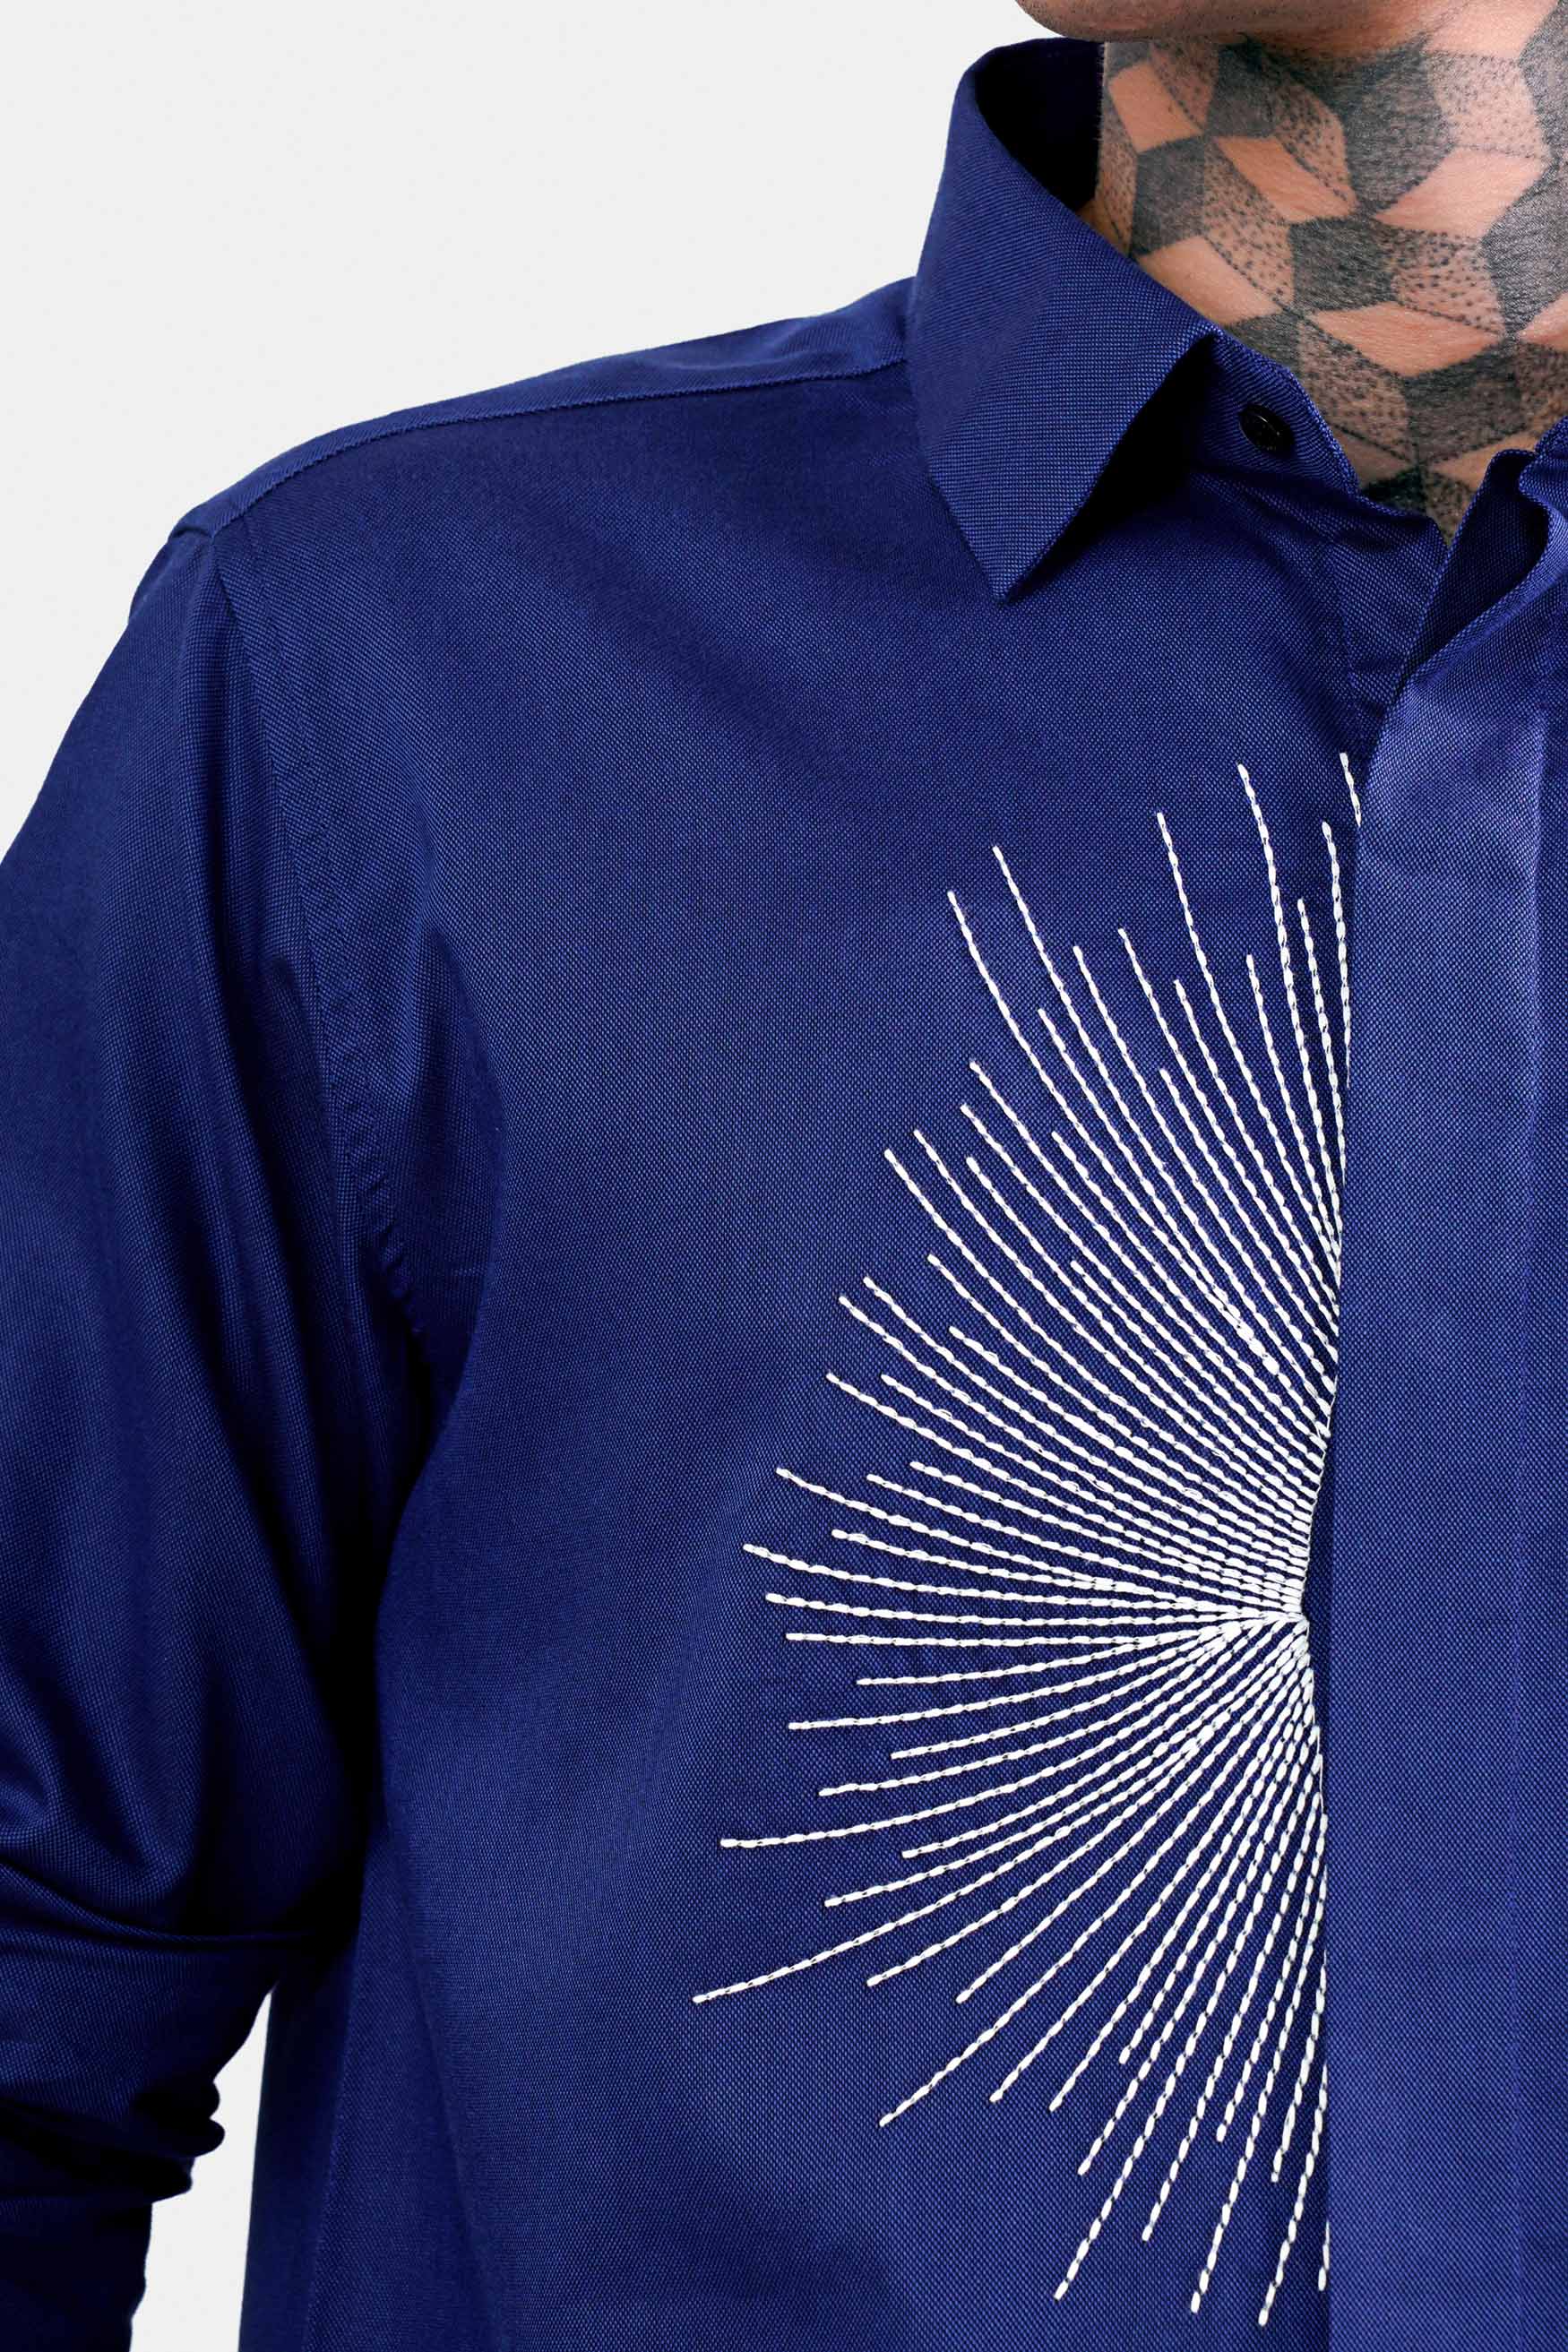 Nile Blue Embroidered Royal Oxford Designer Shirt